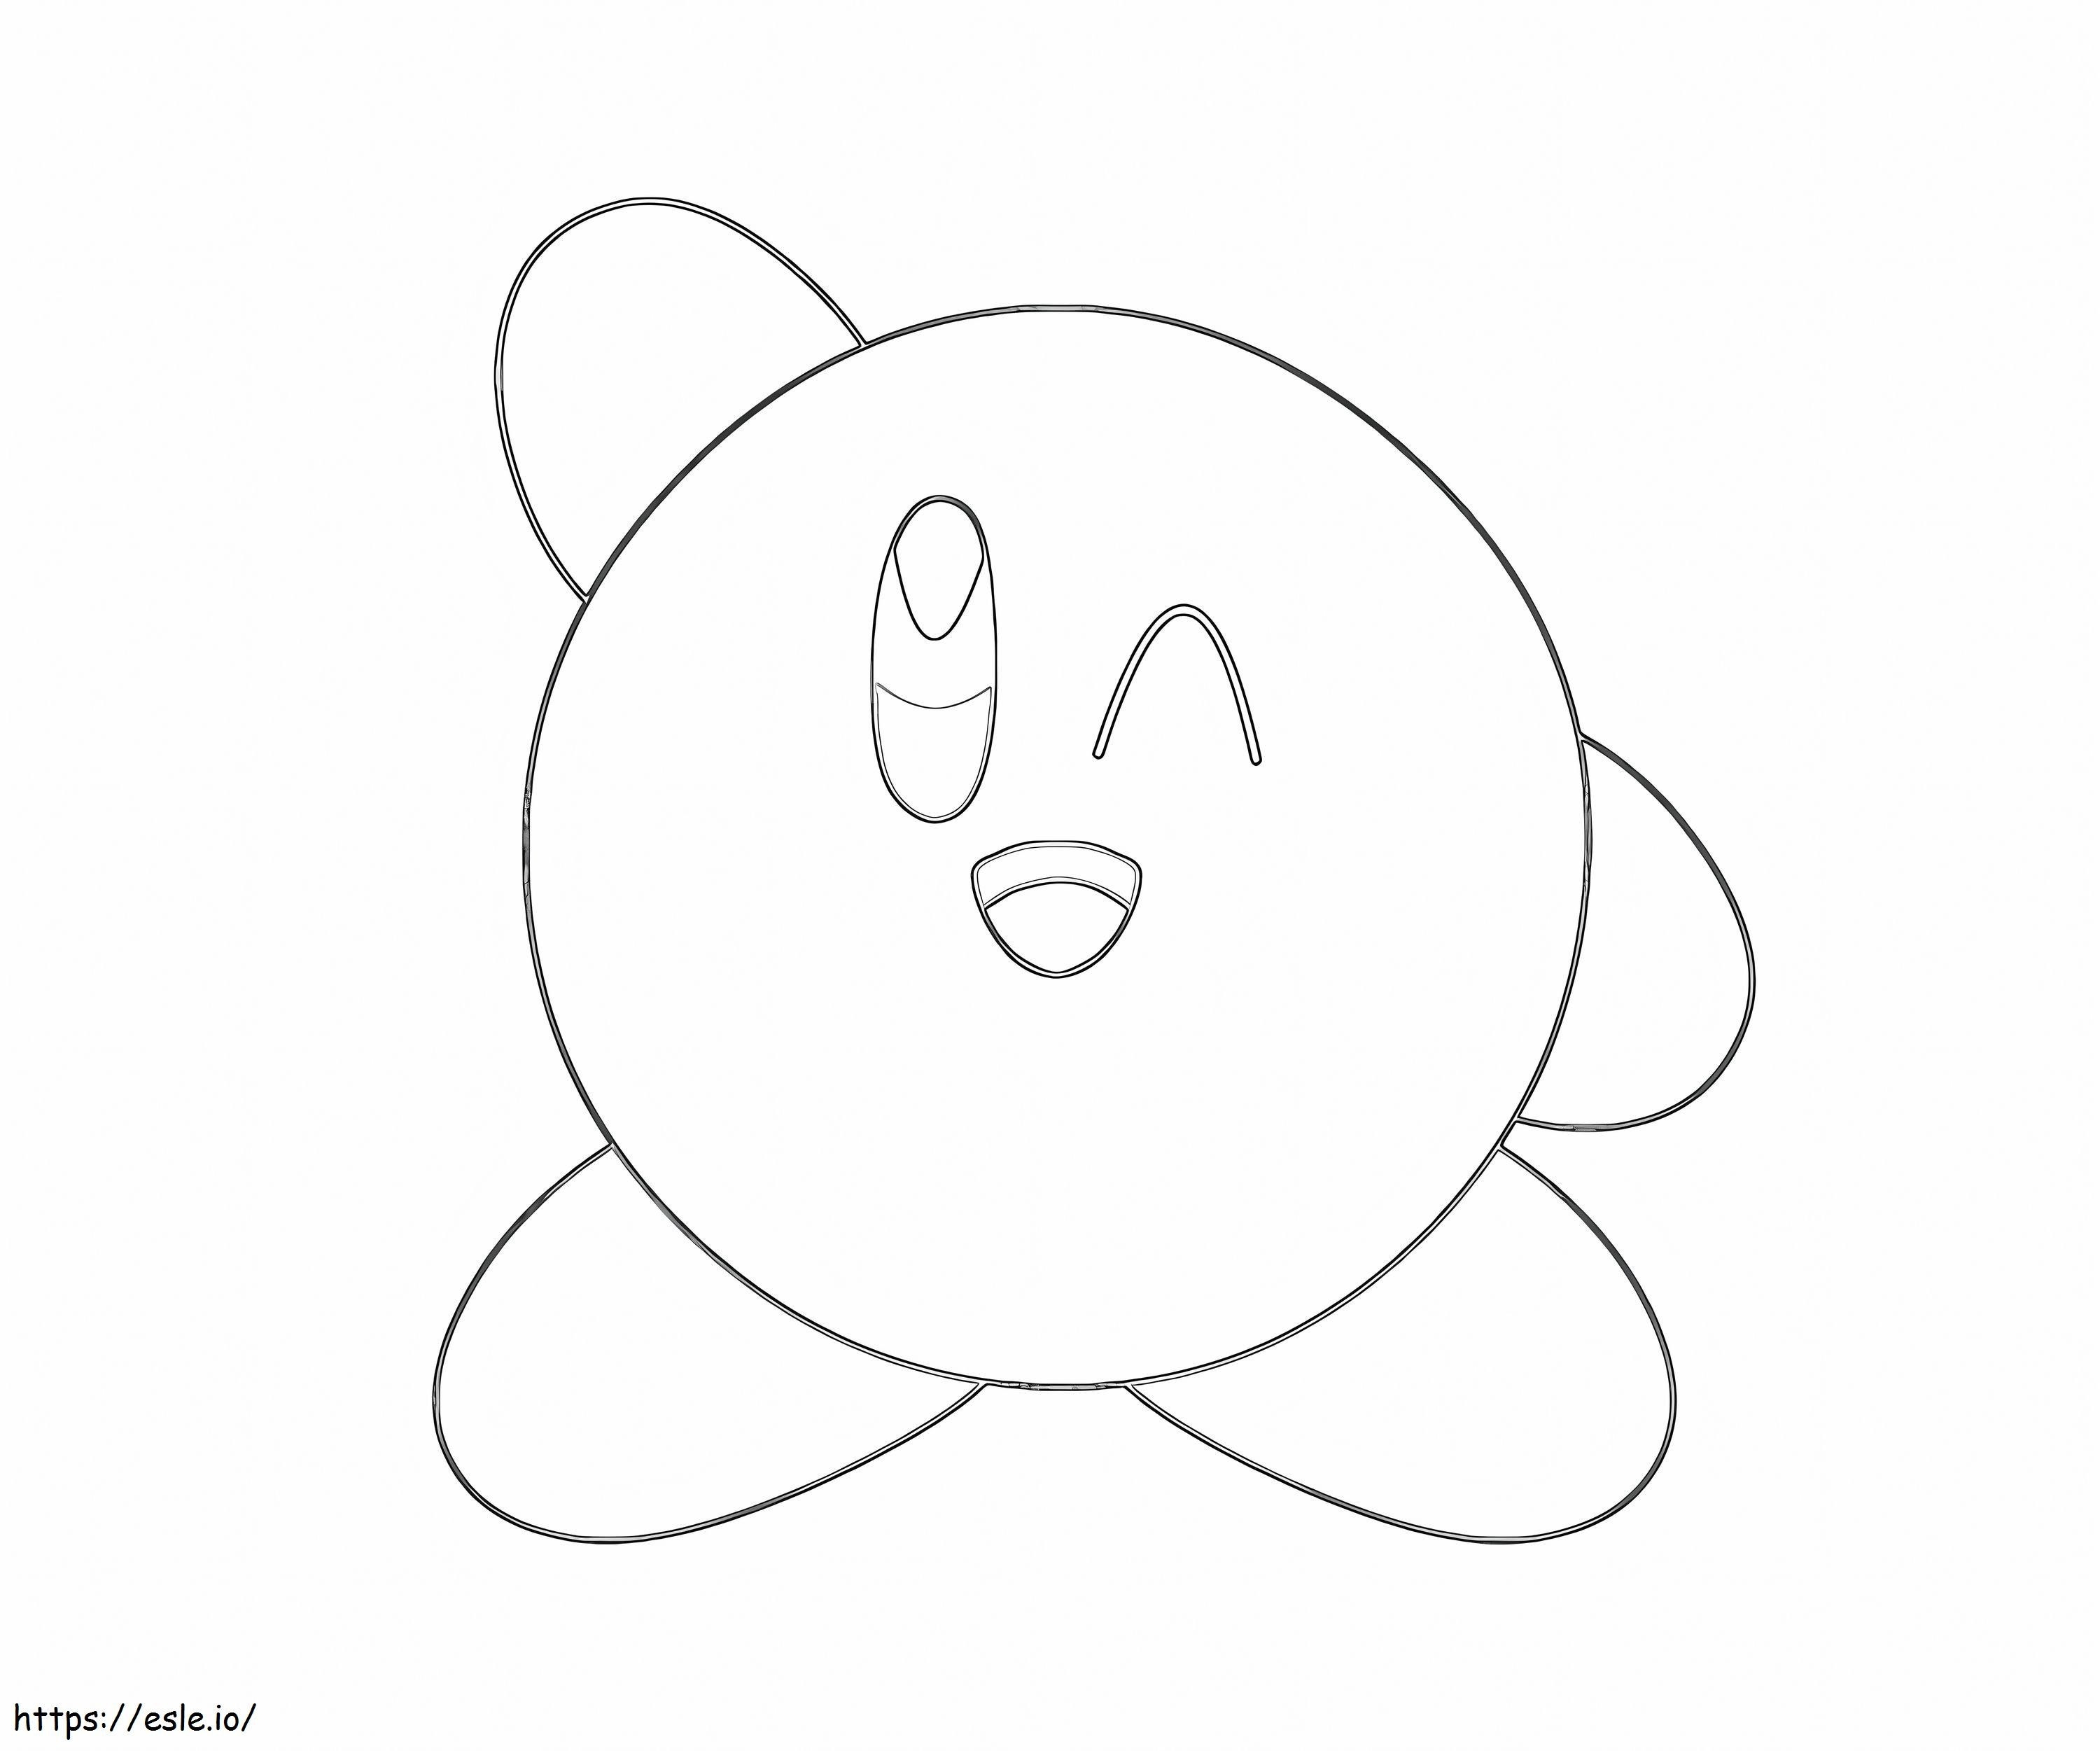 Fun Kirby coloring page